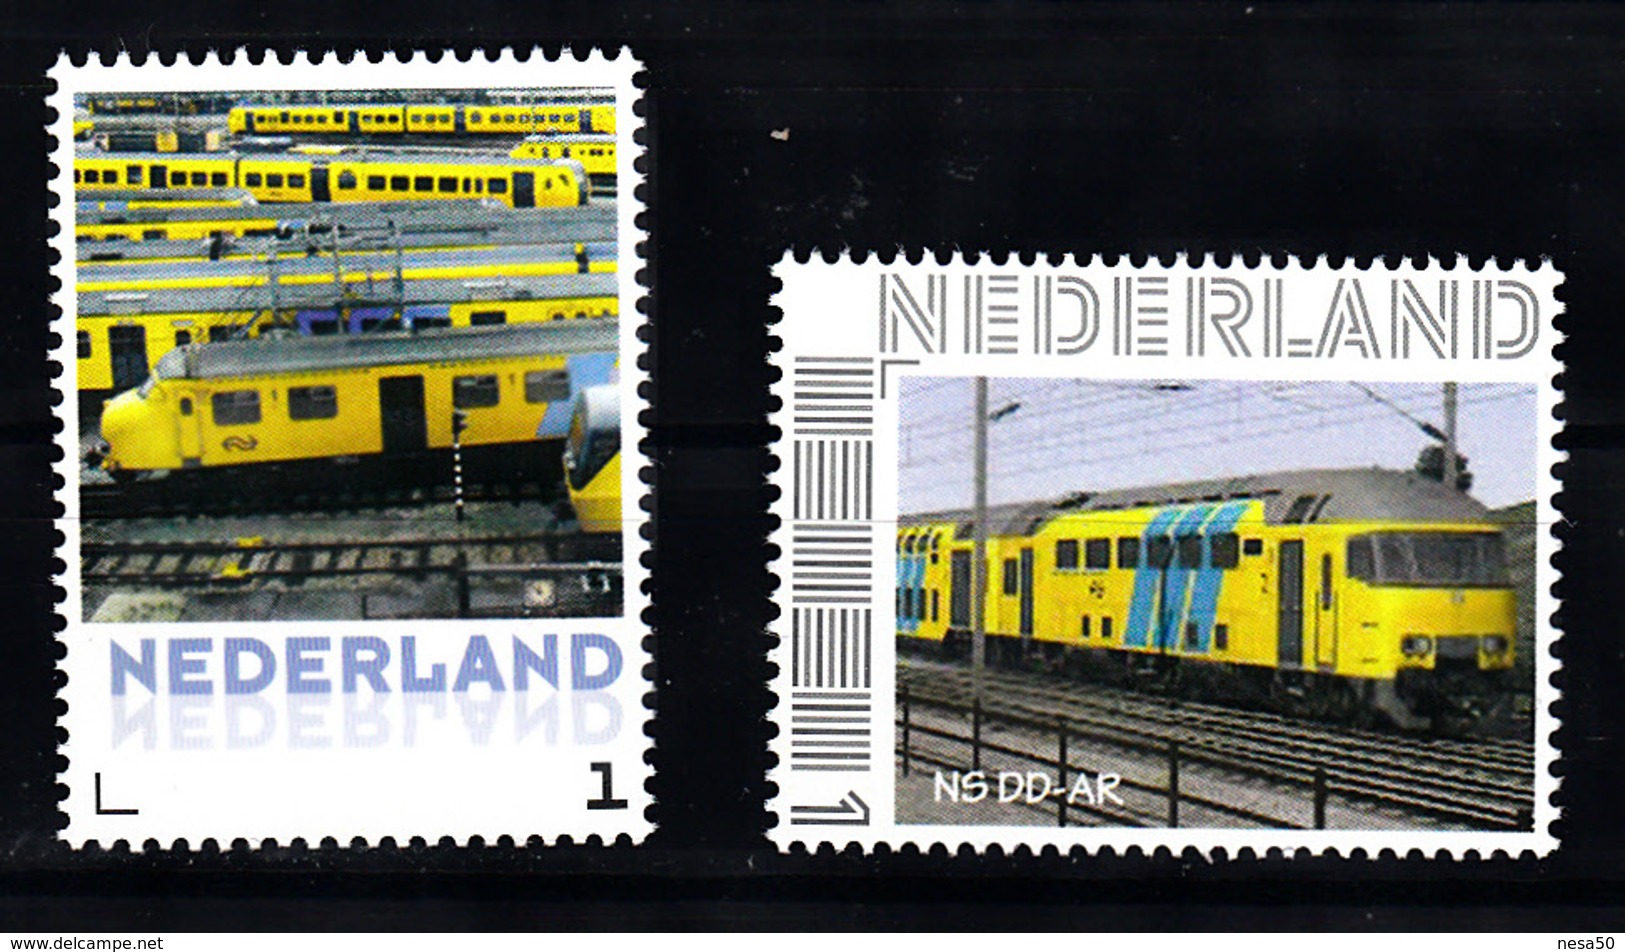 Trein, Train, Eisenbahn, Nederland Persoonlijke Zegel: NS Parkeren + NS DD - AR - Trenes